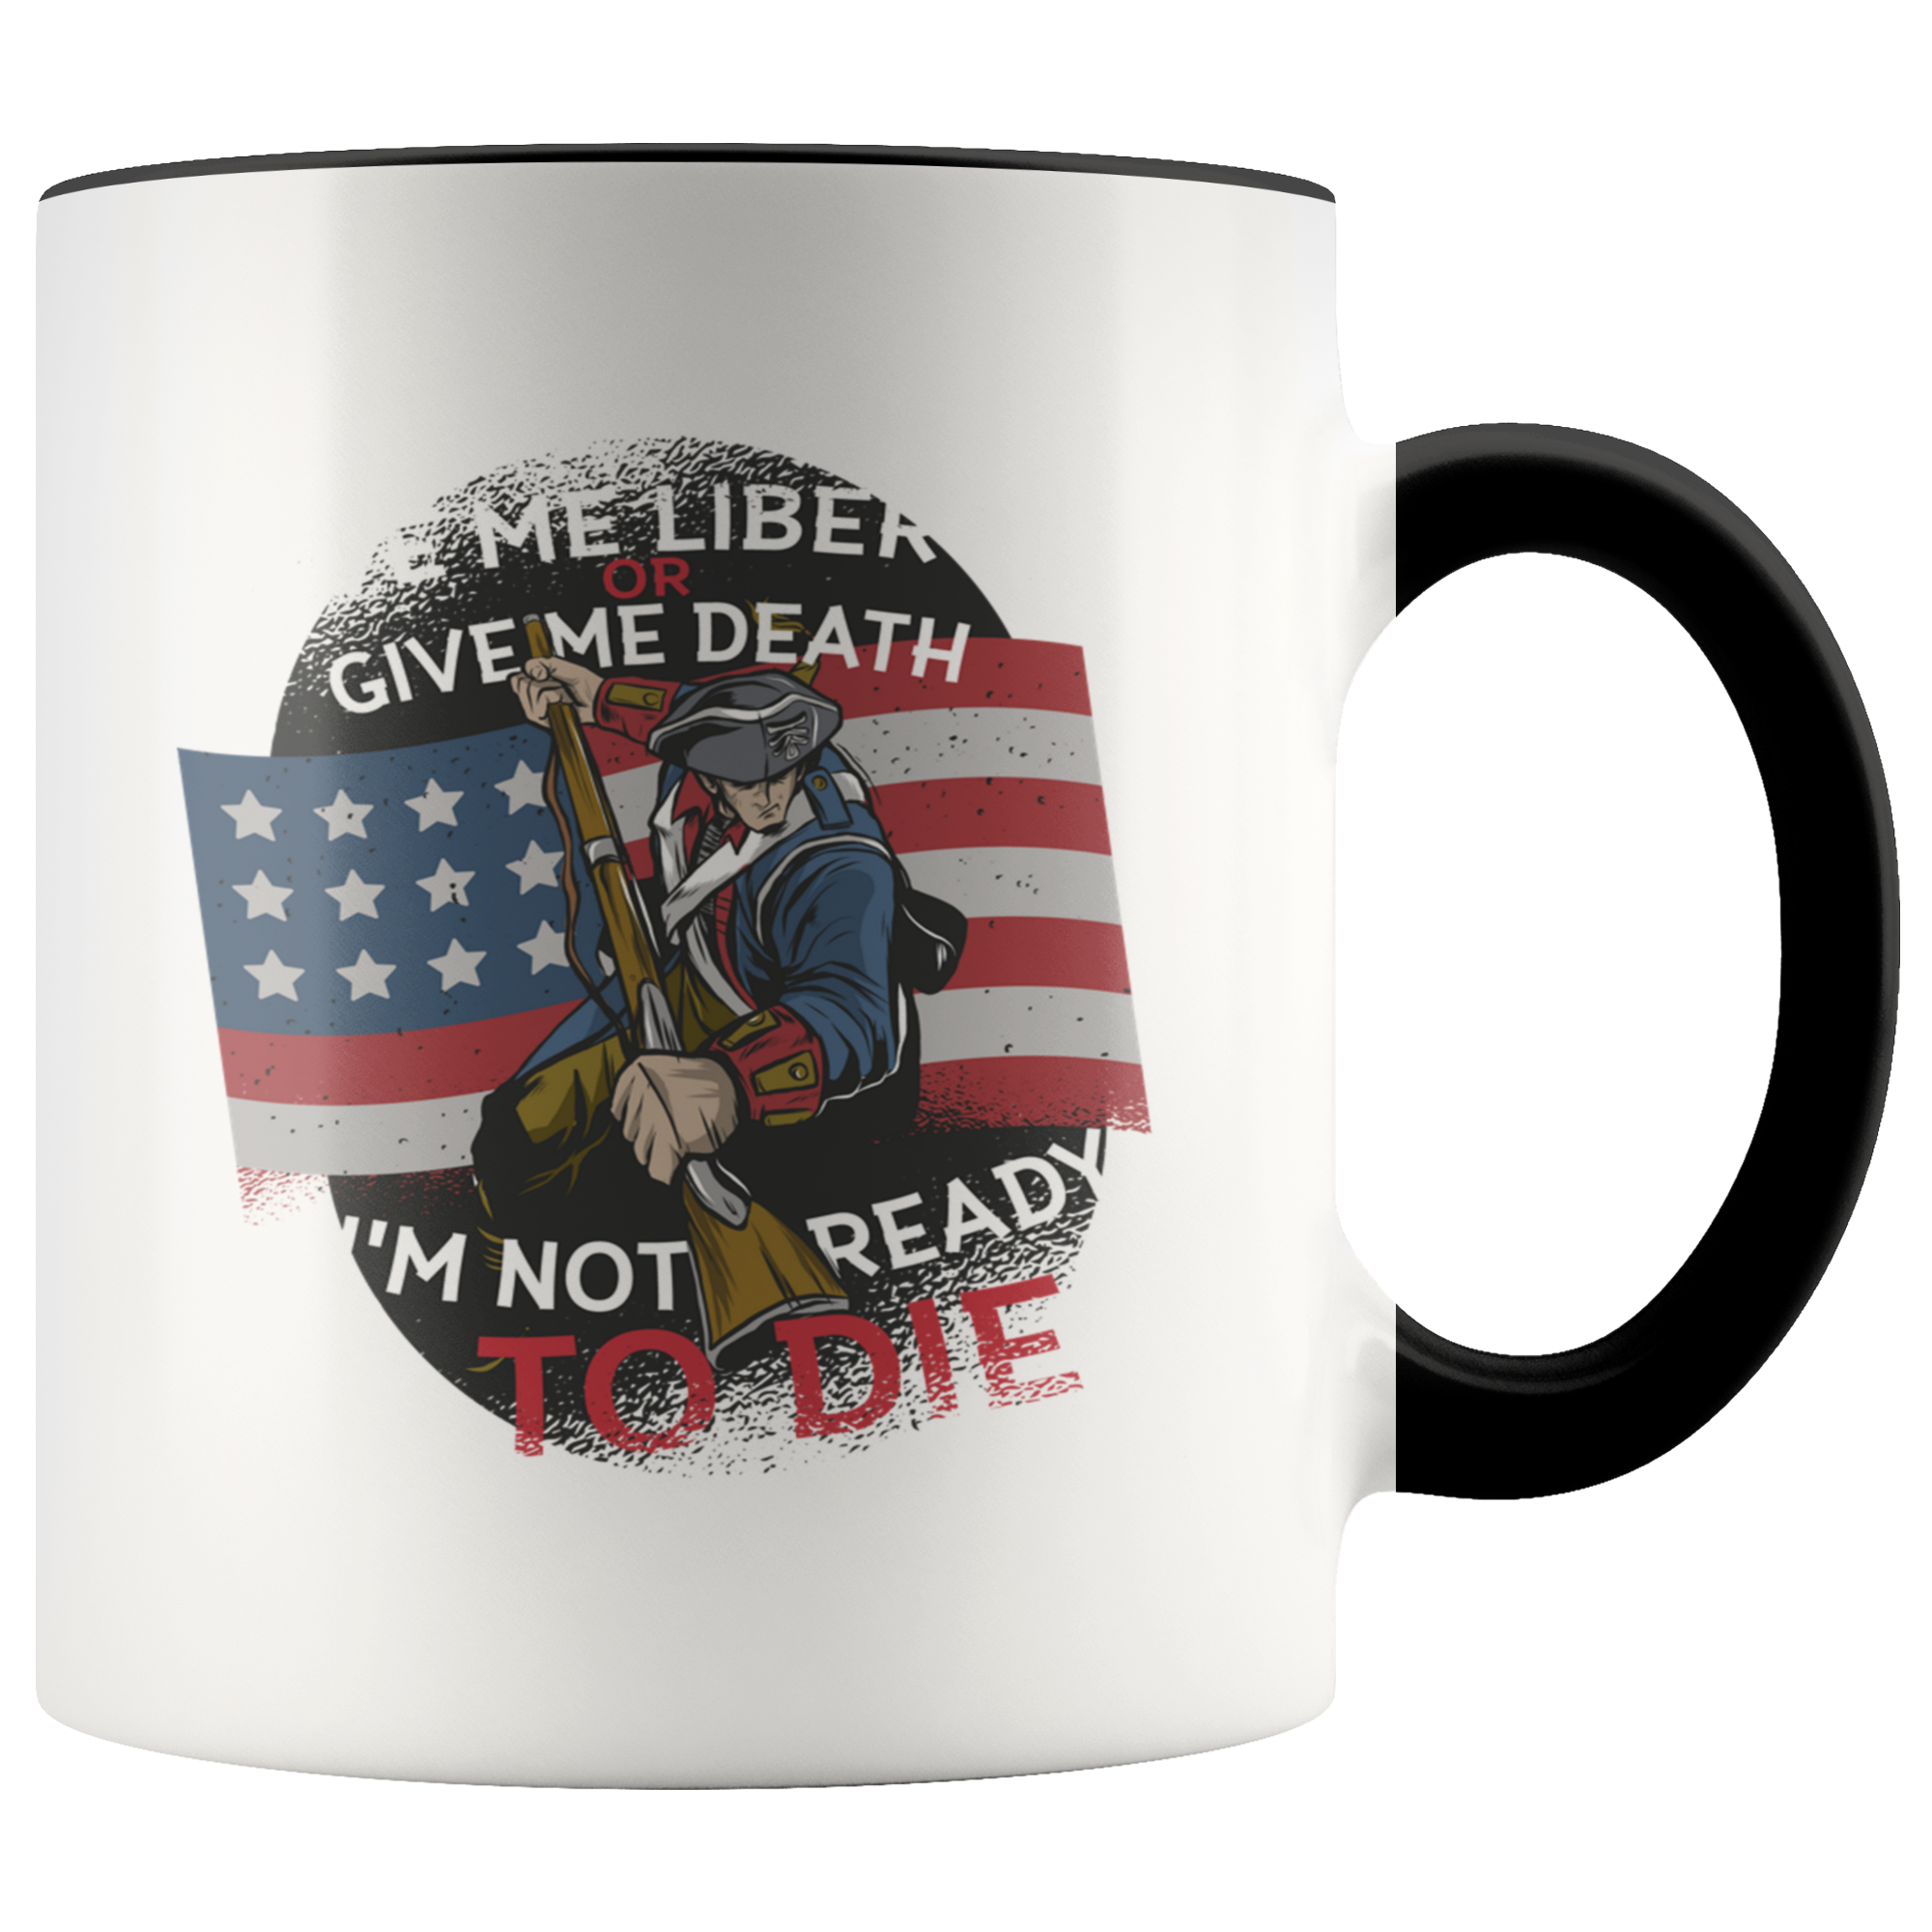 Freedom Mug